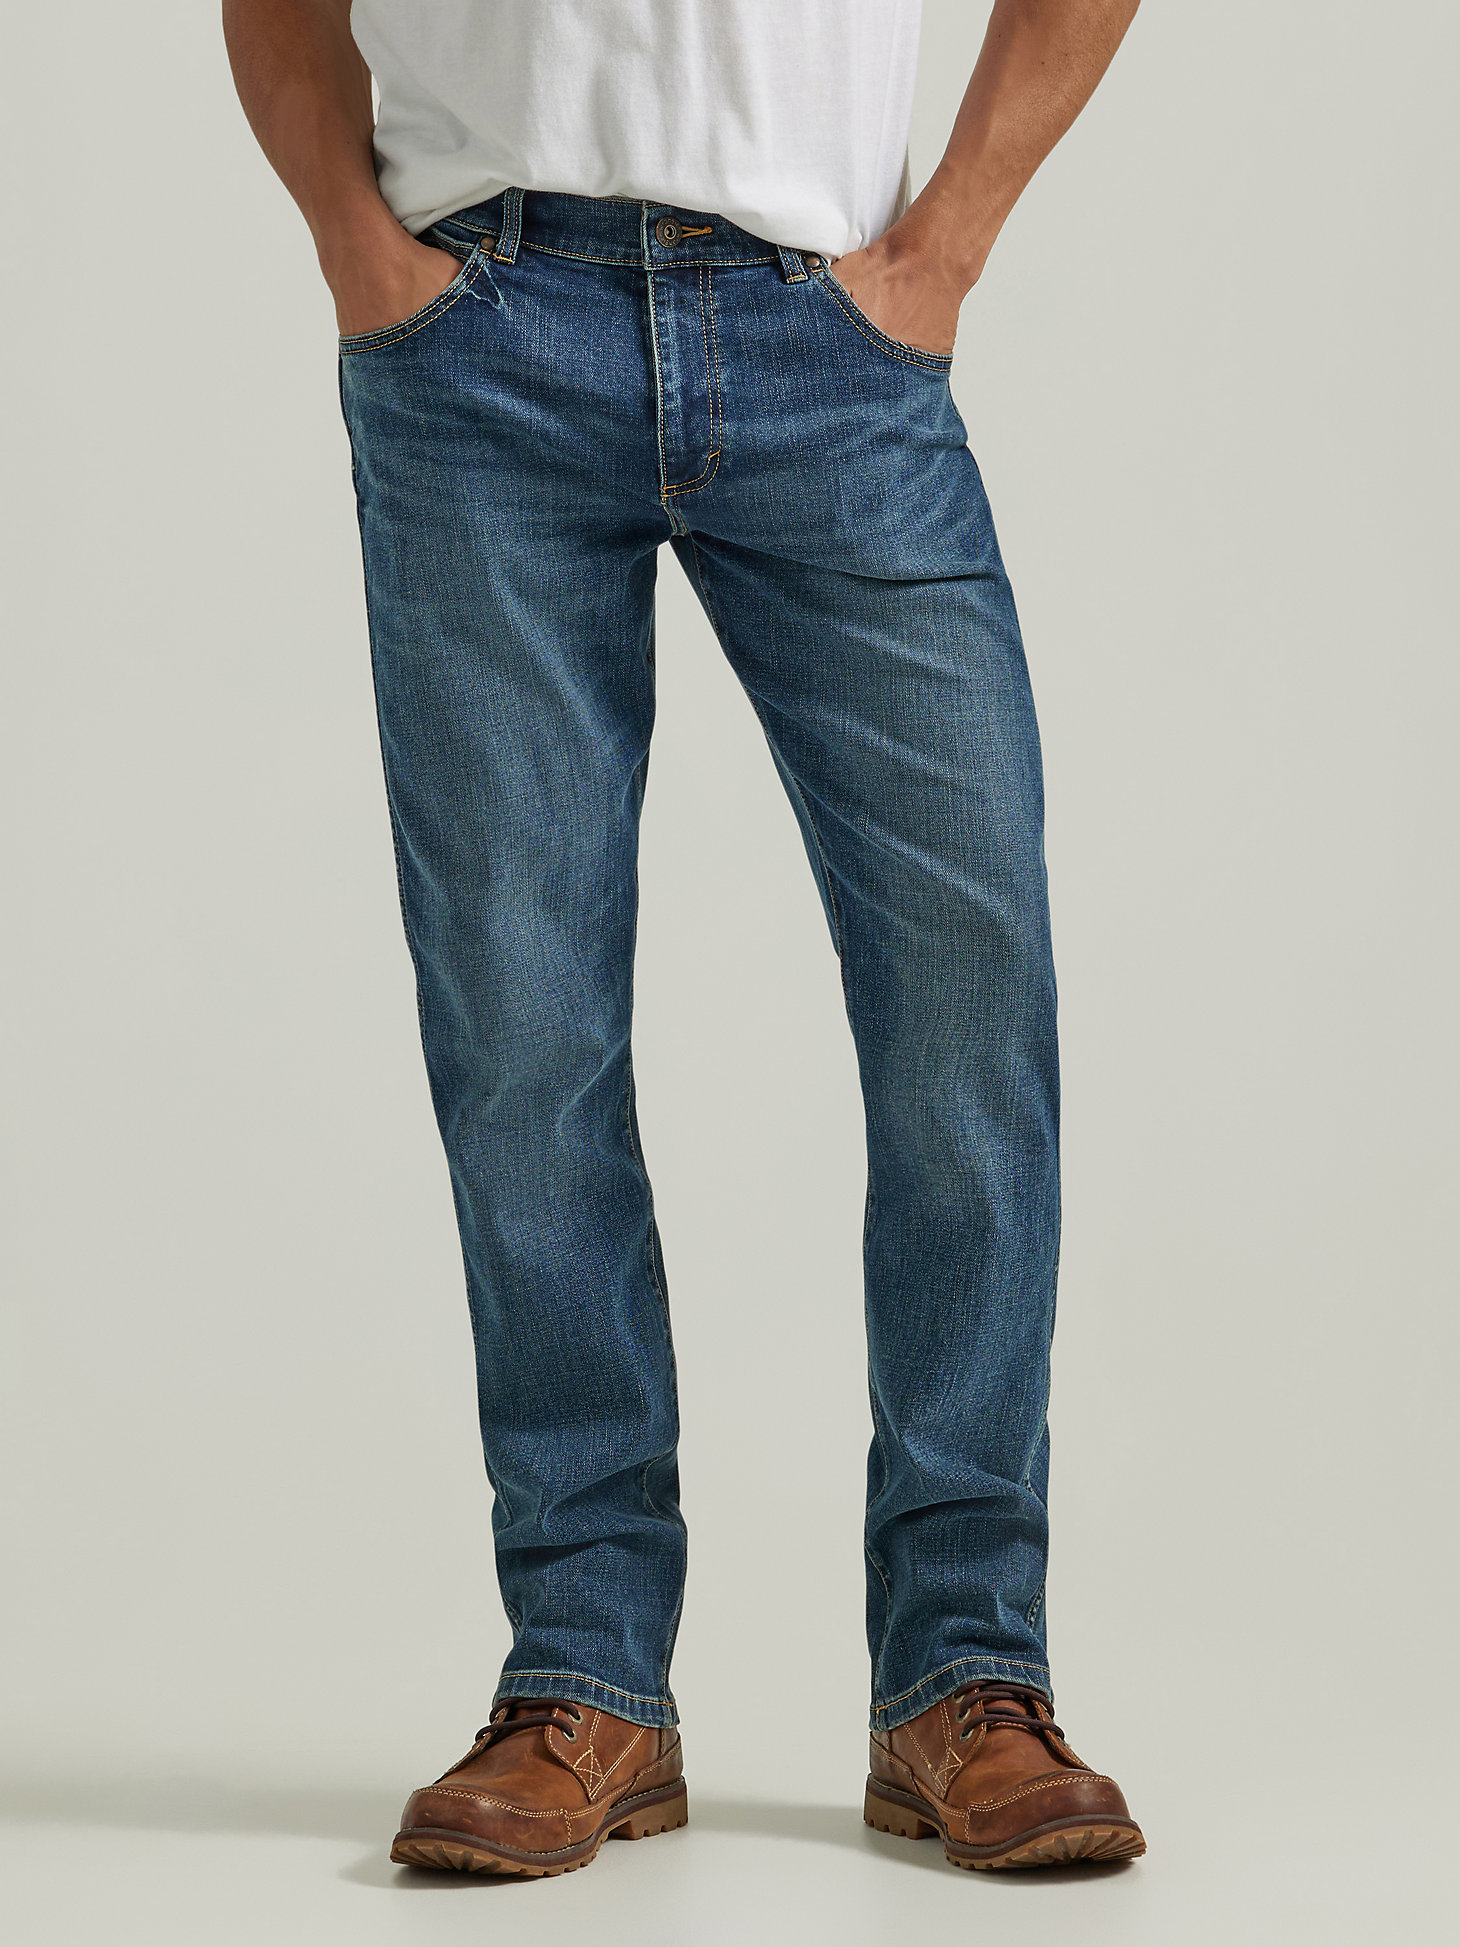 Men's Wrangler® Slim Straight Jean in Mid Wash alternative view 1